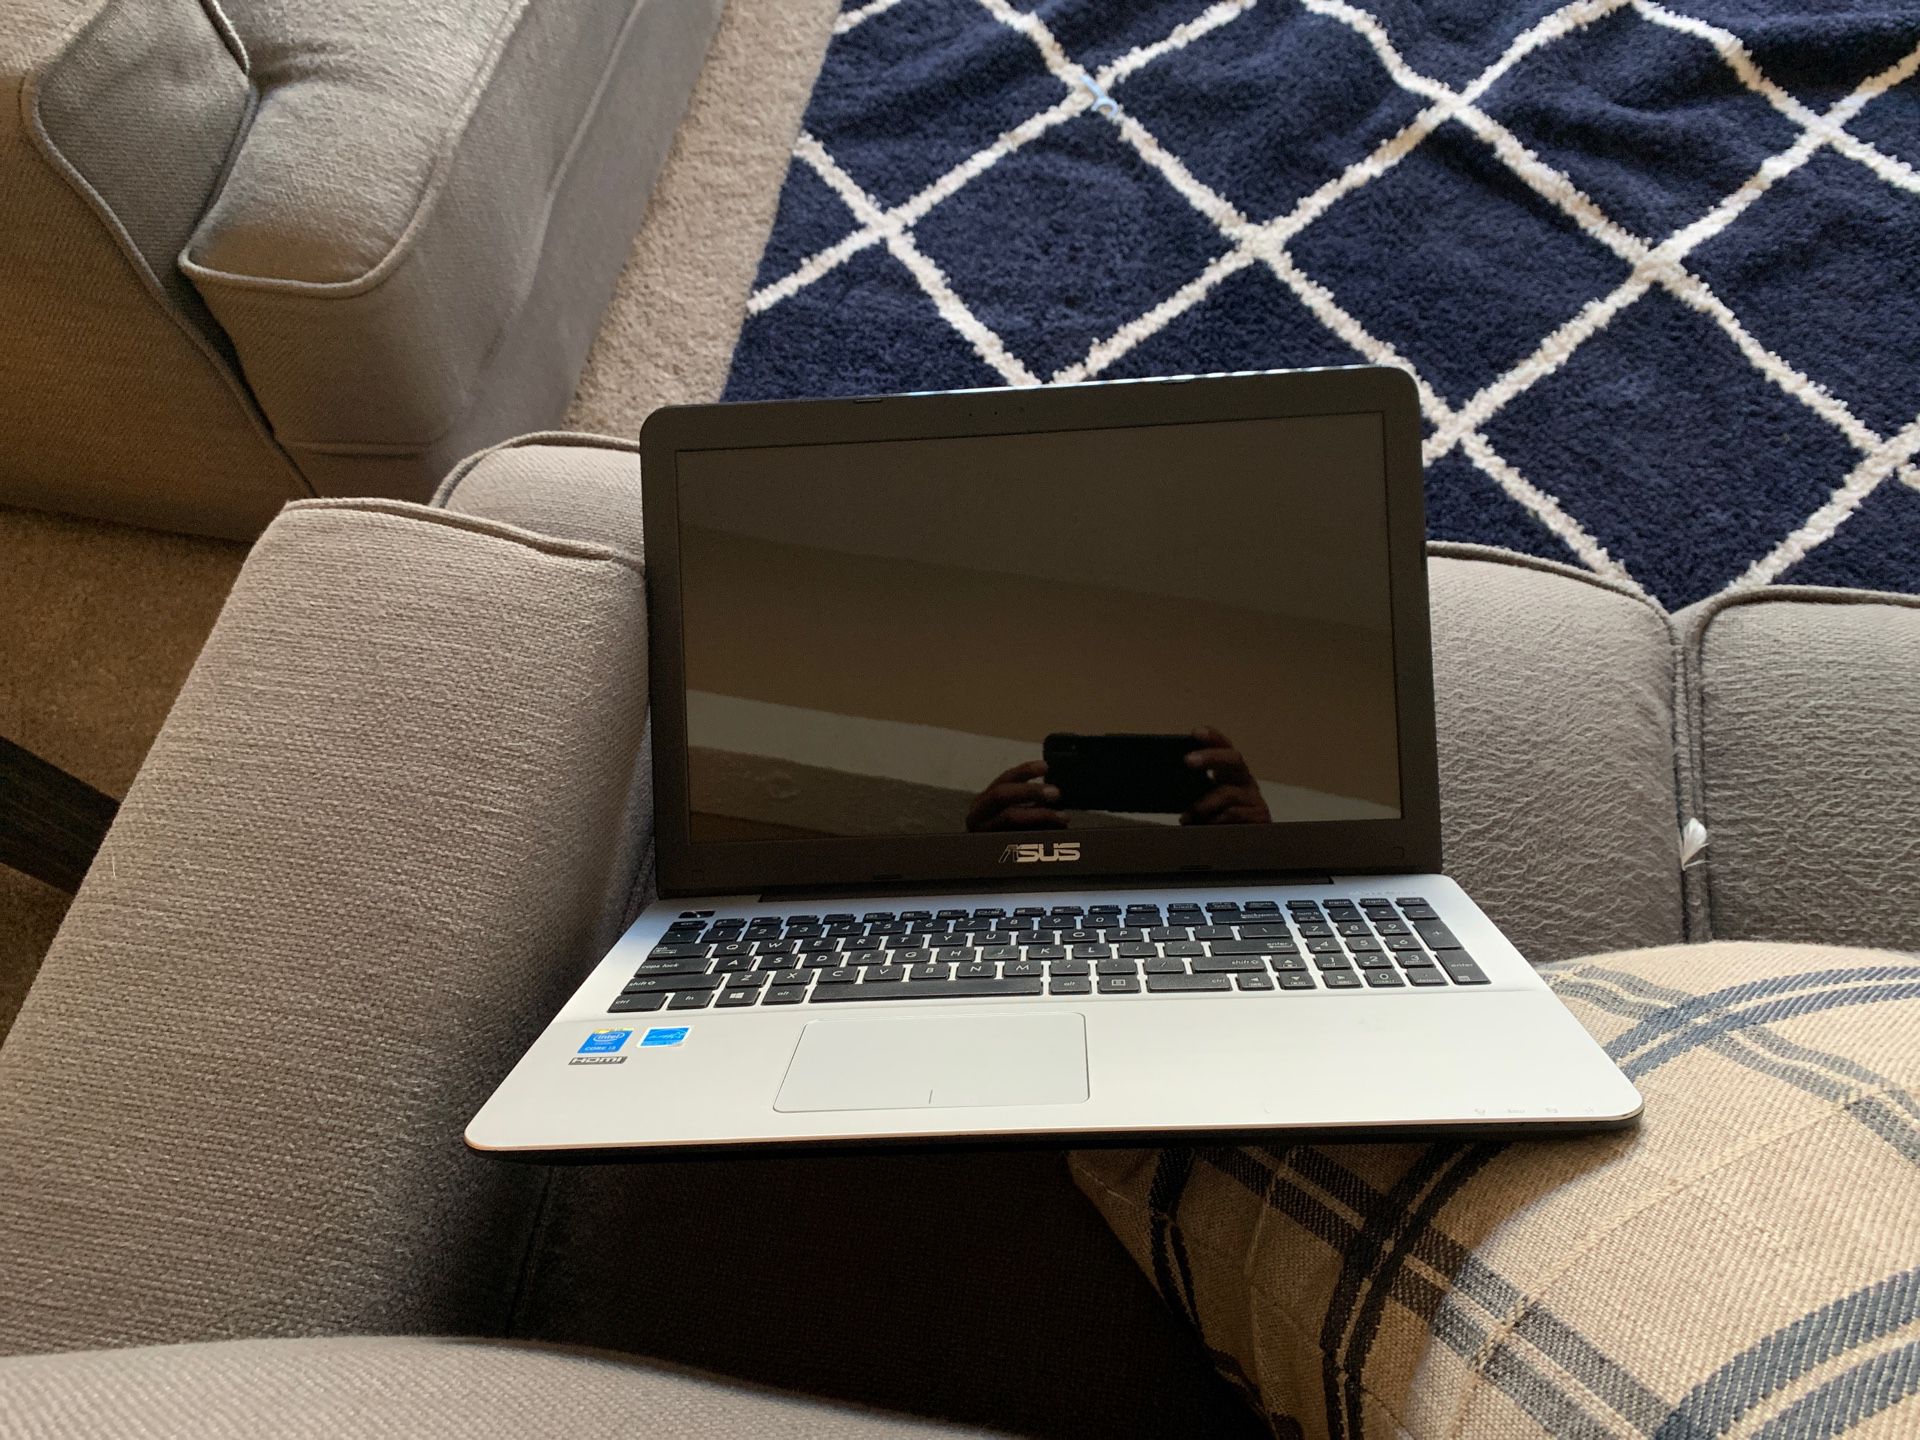 Asus x555L laptop $100